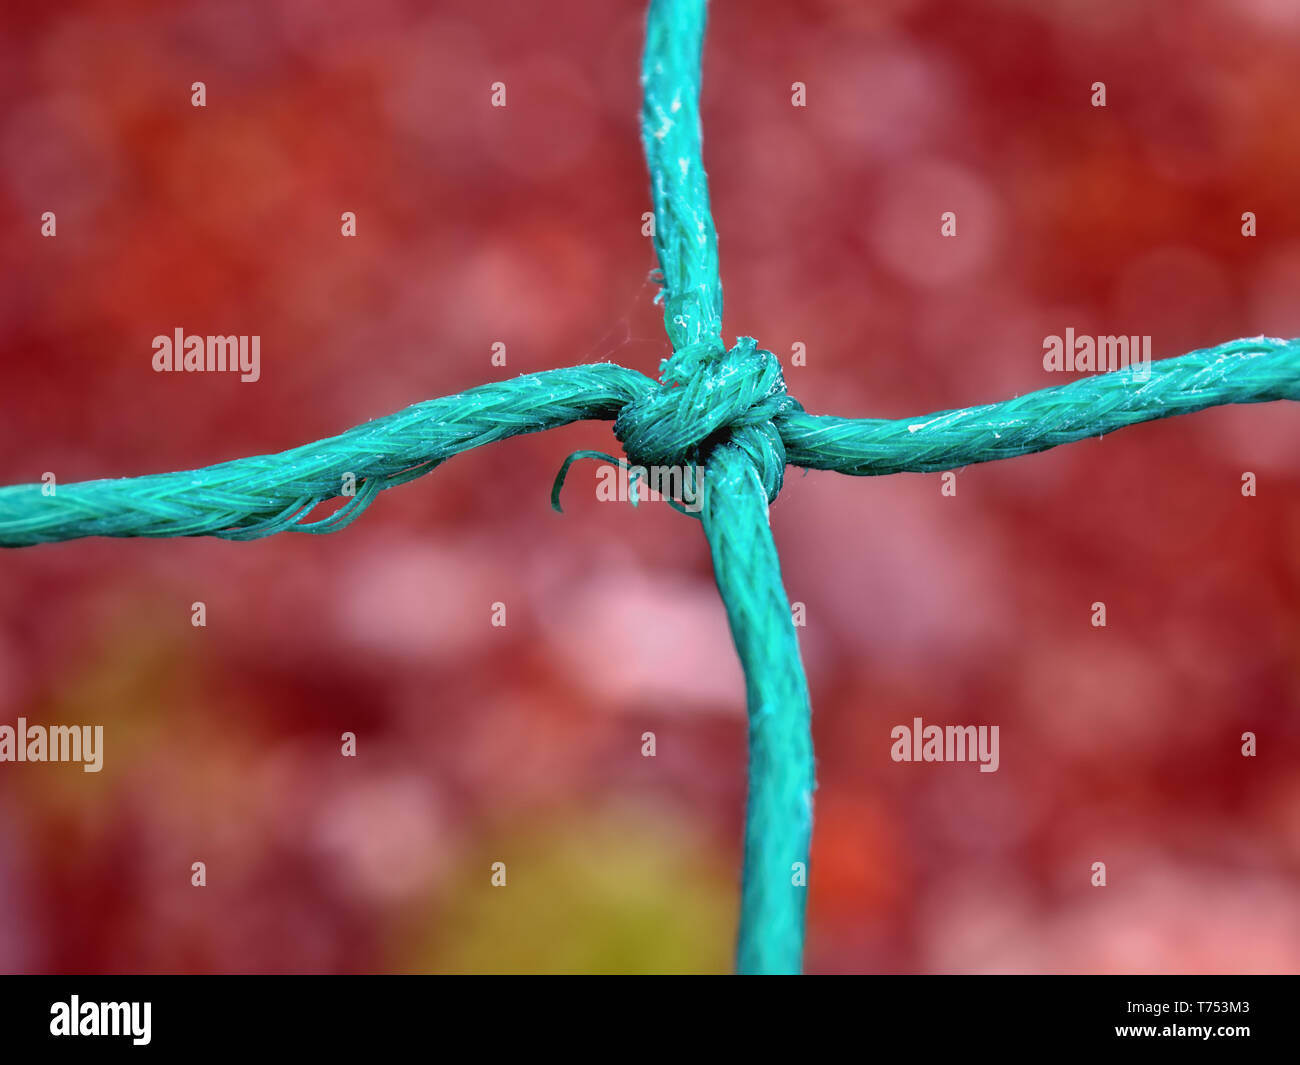 Une corde verte ou une corde avec un trou du milieu, lié comme un filet pour un poisson piège. En close-up, la matière est faite de fils synthétiques, l'arrière-plan est mou Banque D'Images